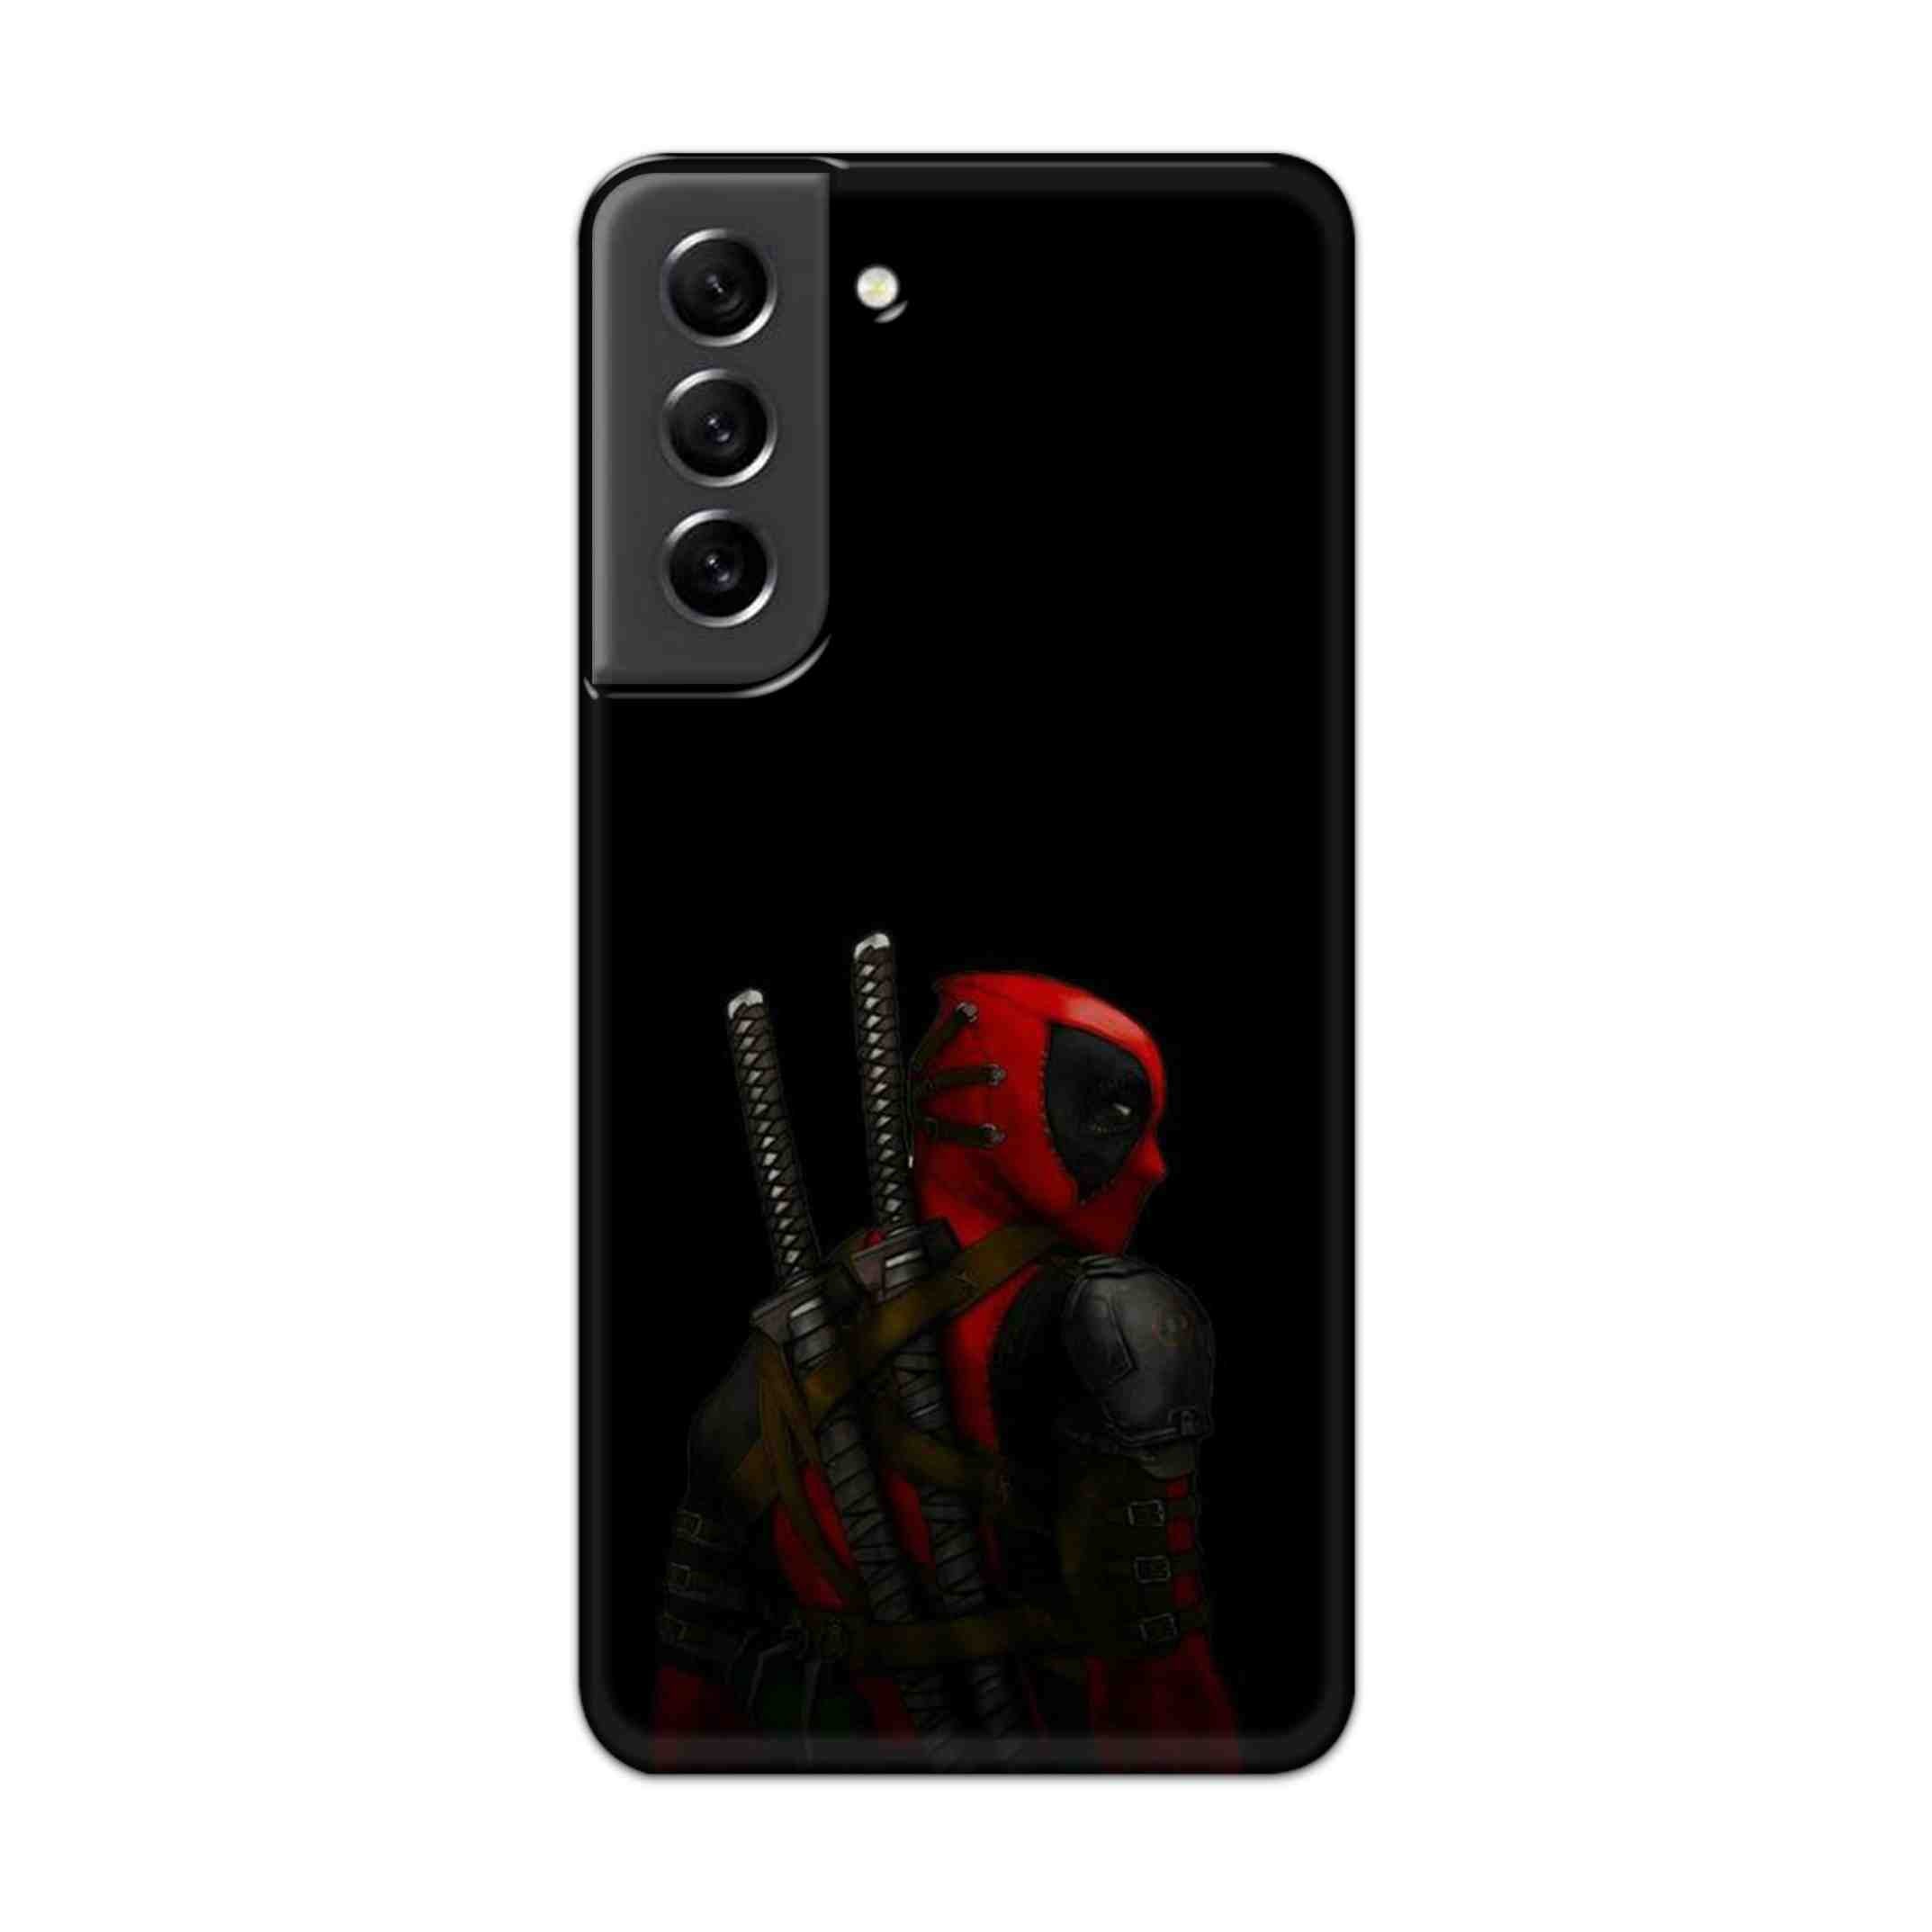 Buy Deadpool Hard Back Mobile Phone Case Cover For Samsung S21 FE Online